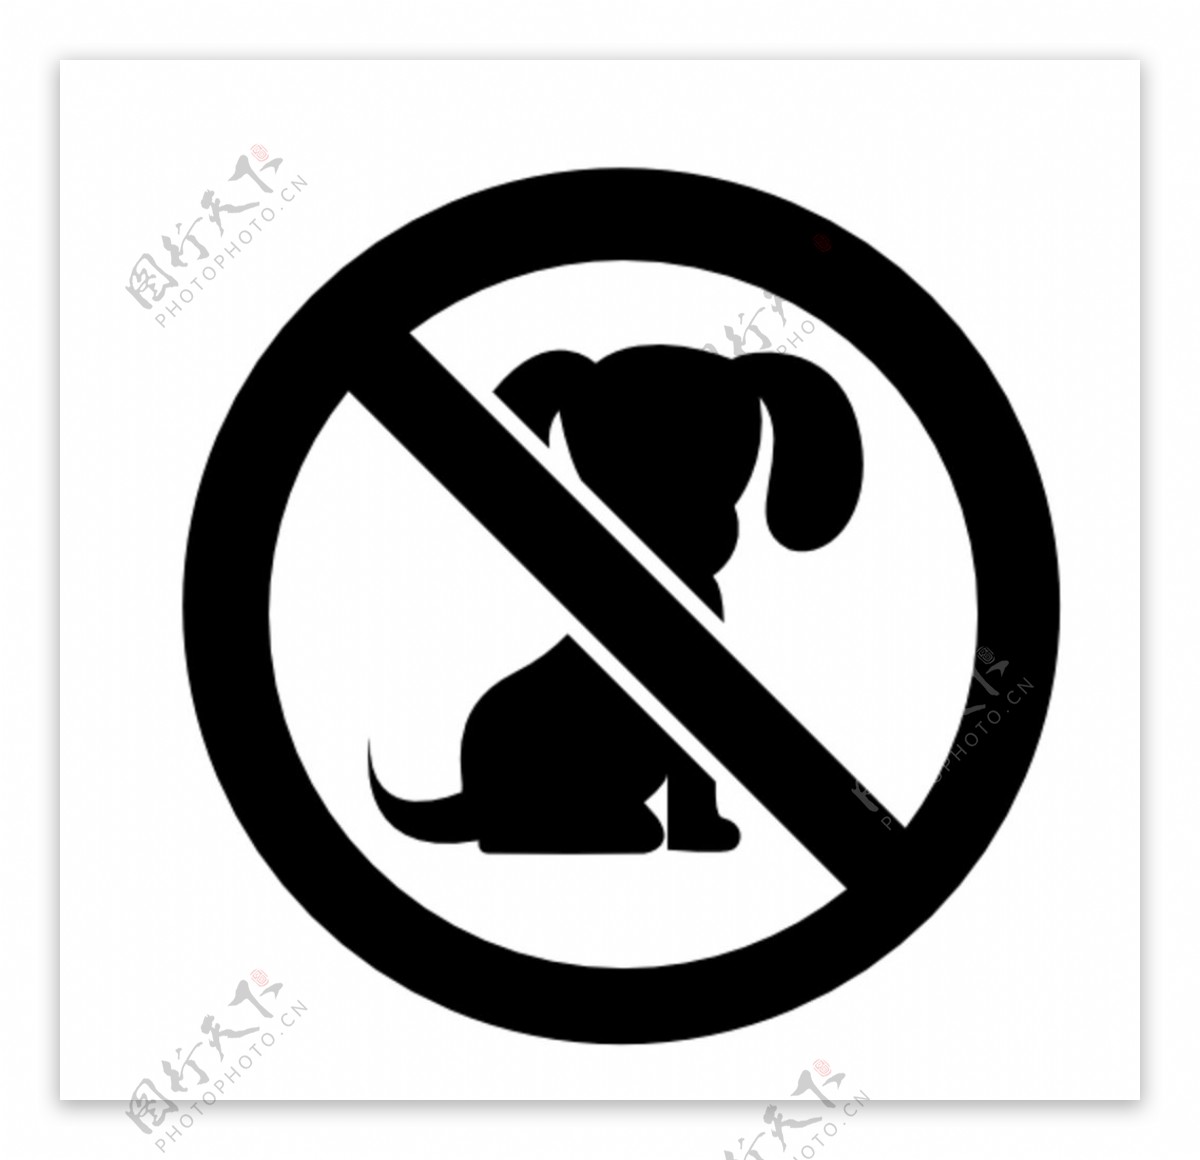 宠物禁止入内标志图片